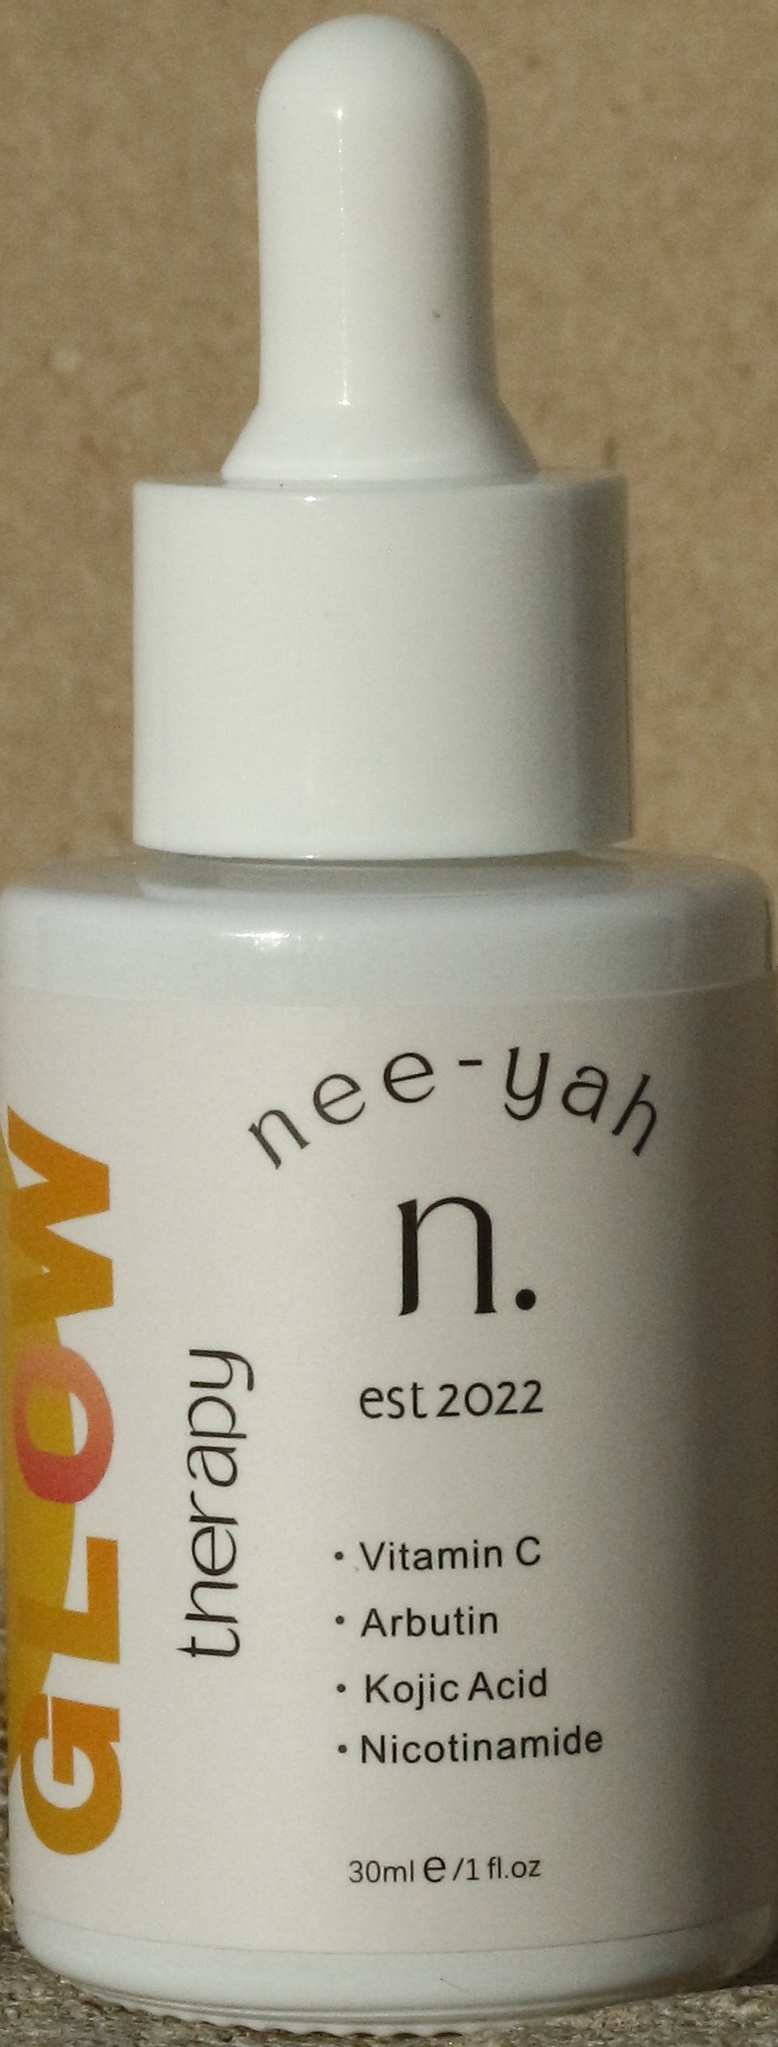 nee-yah Glow Therapy Vitamin C Brightening Serum